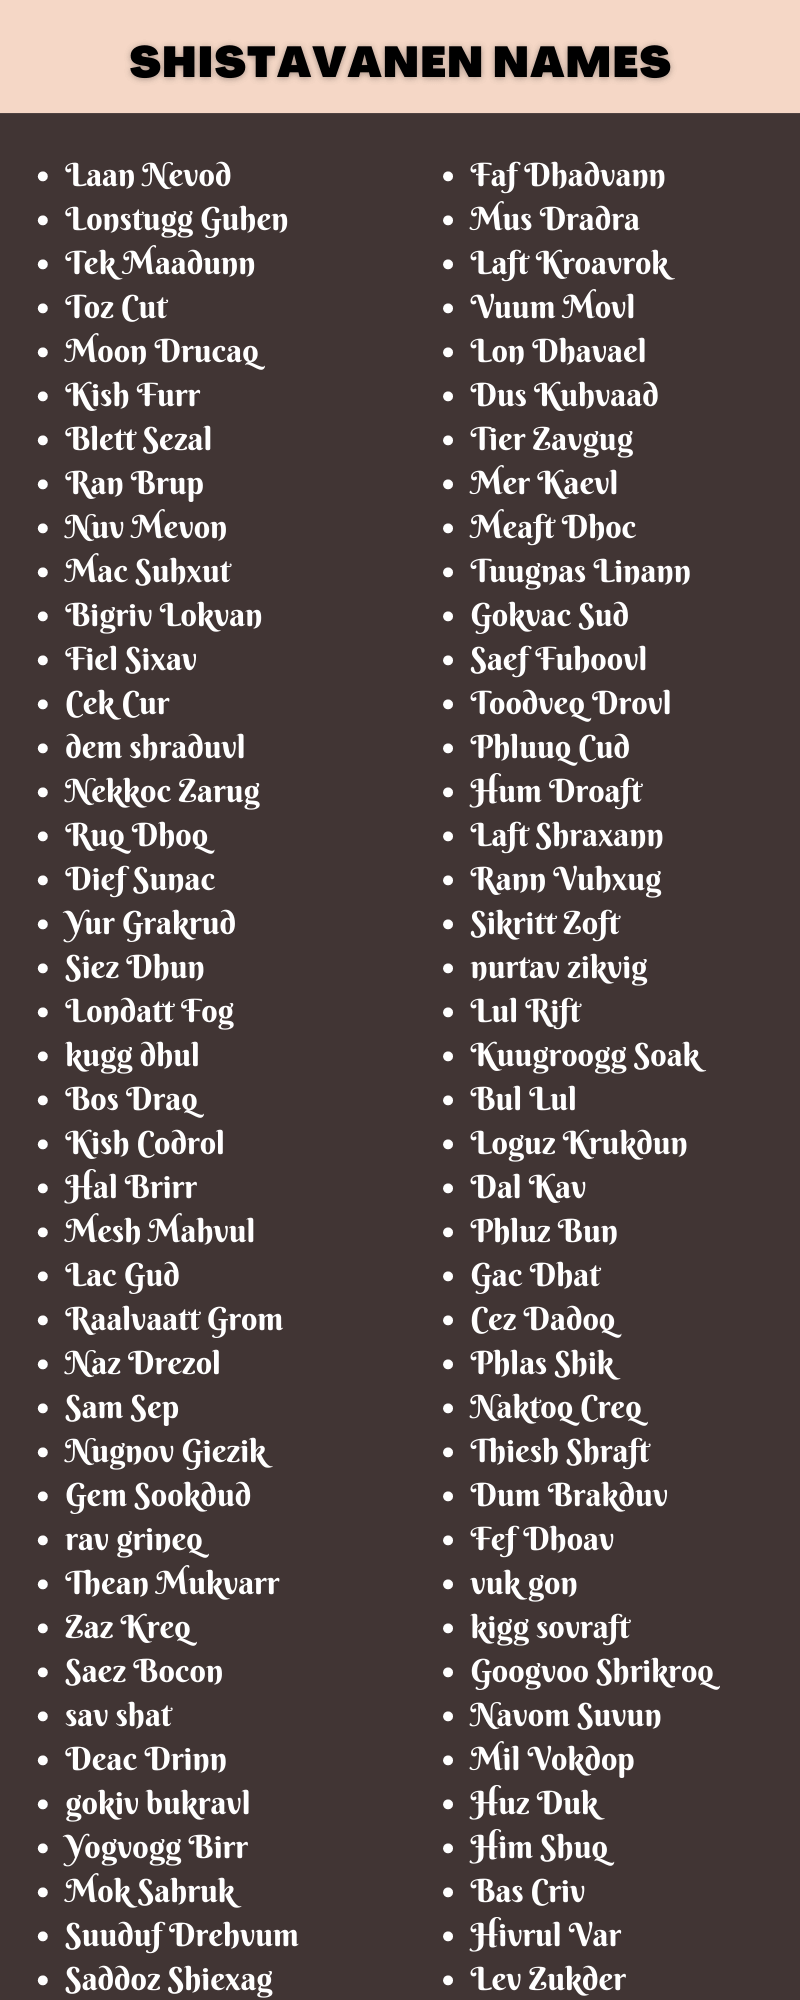 Shistavanen Names